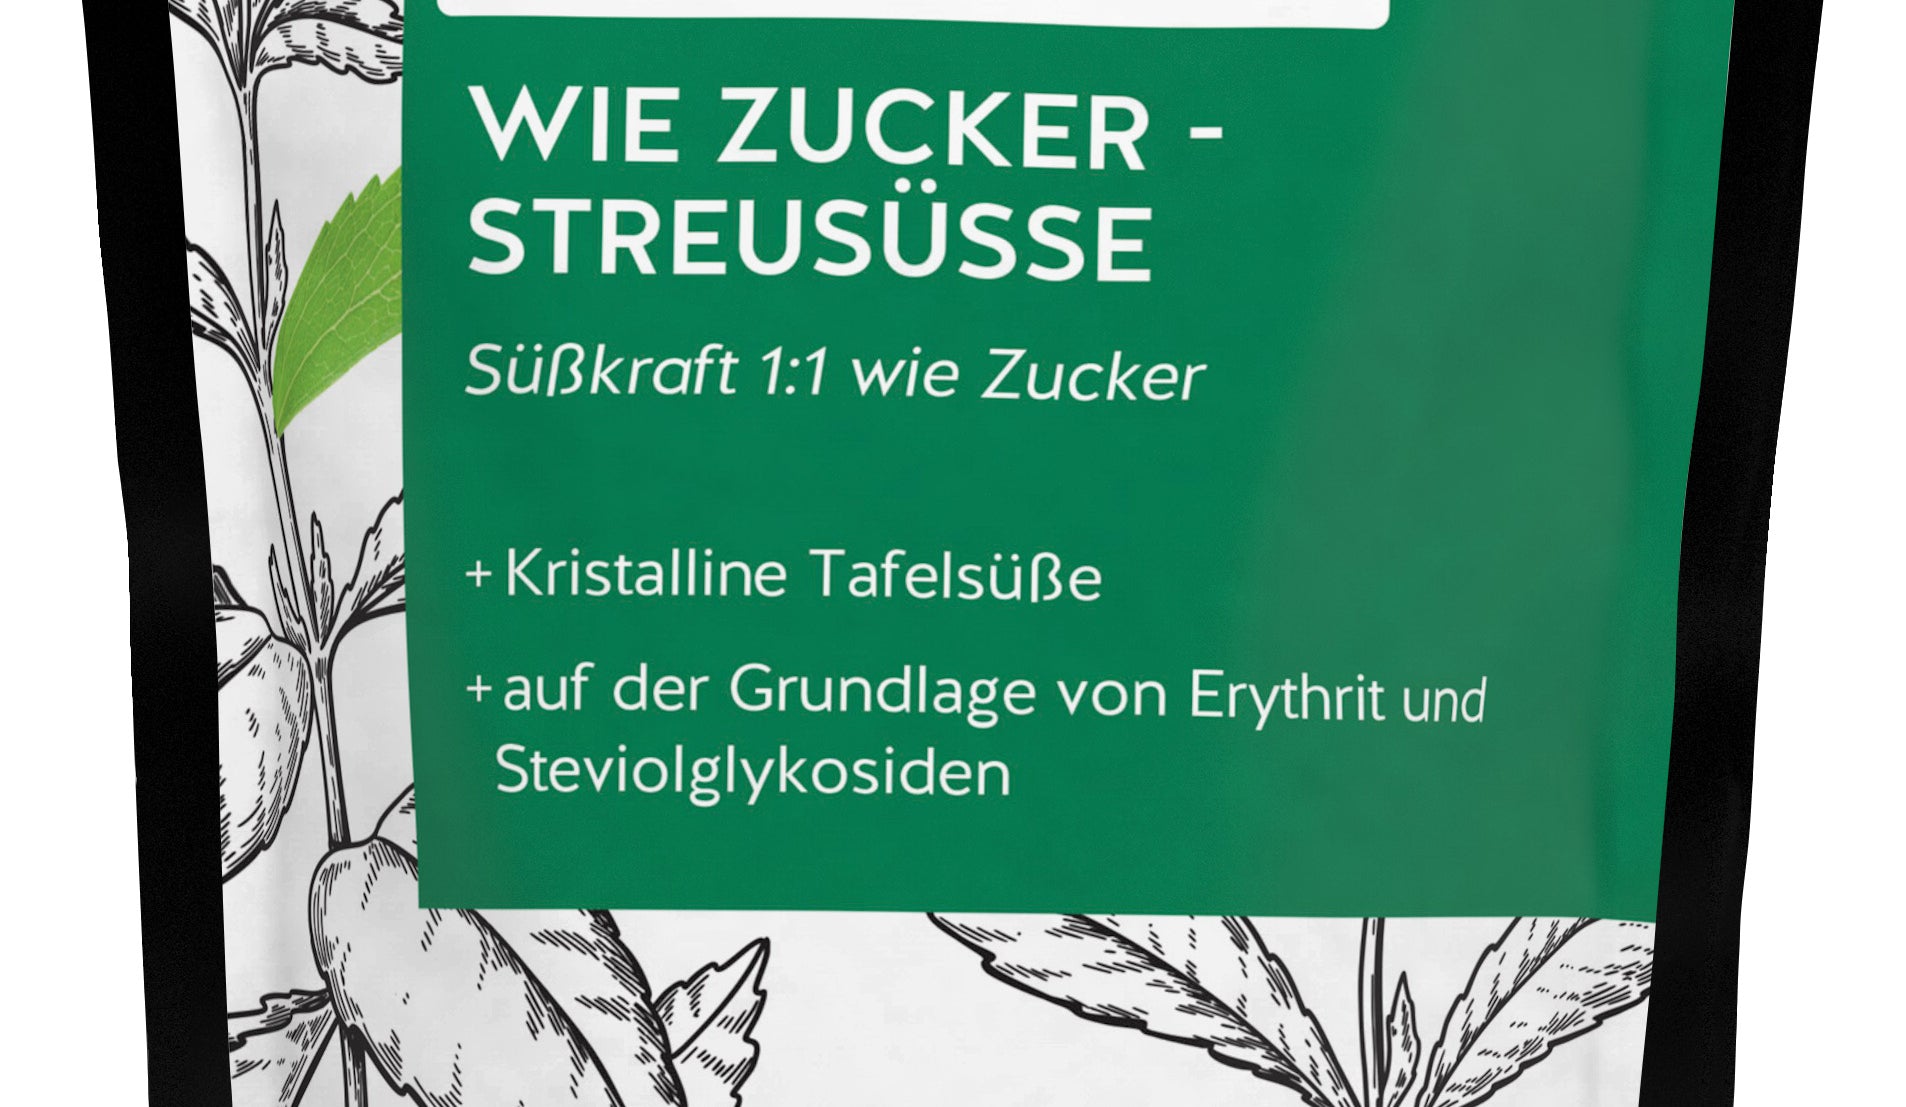 DOC NATURES  Stevia Streusüsse – 350 g